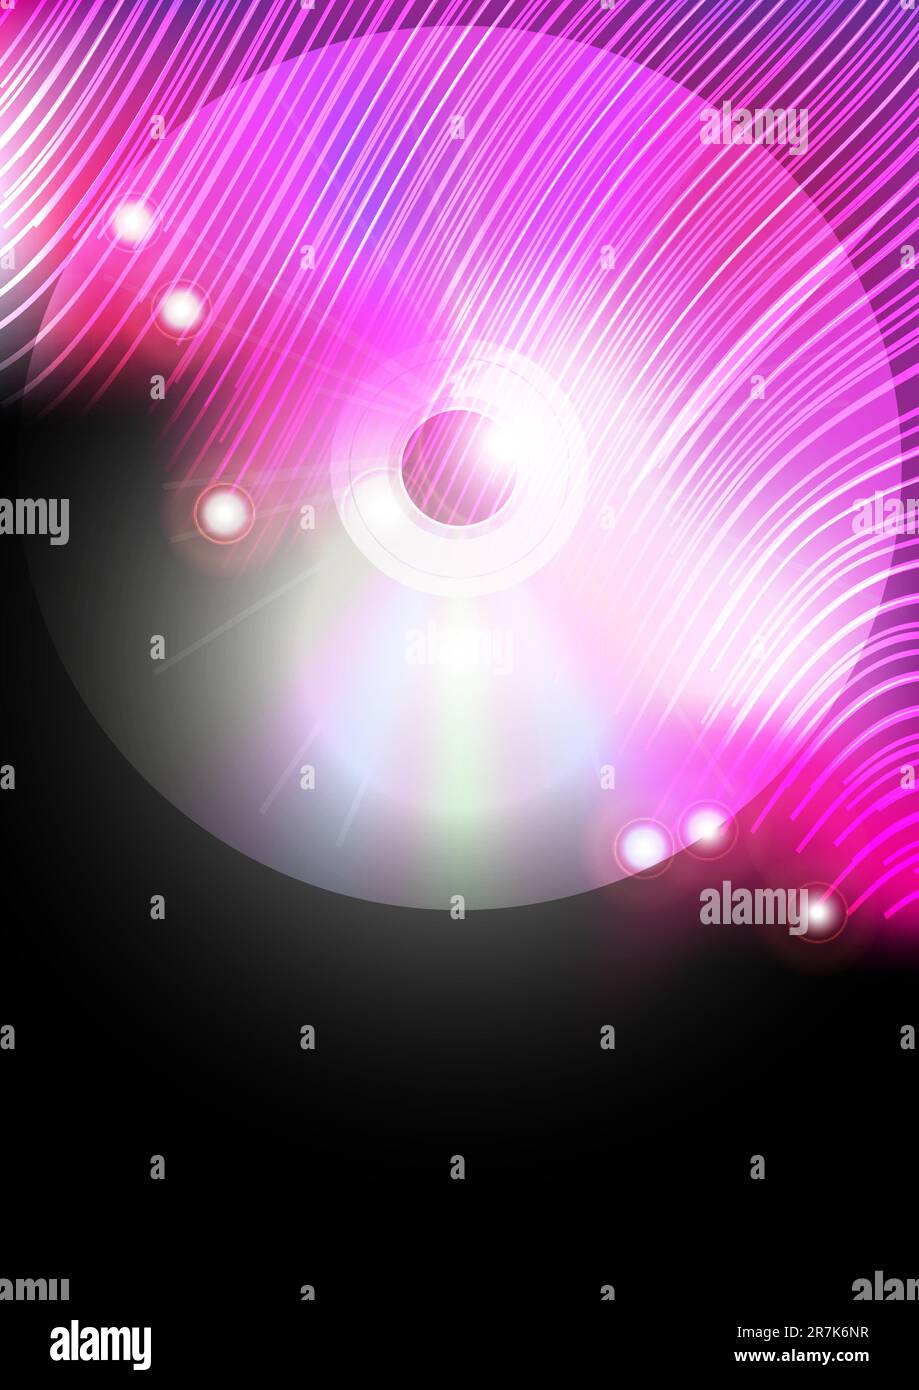 Sottofondo musicale astratto - Compact Disc e fibre ottiche rosa accese su sfondo nero Illustrazione Vettoriale